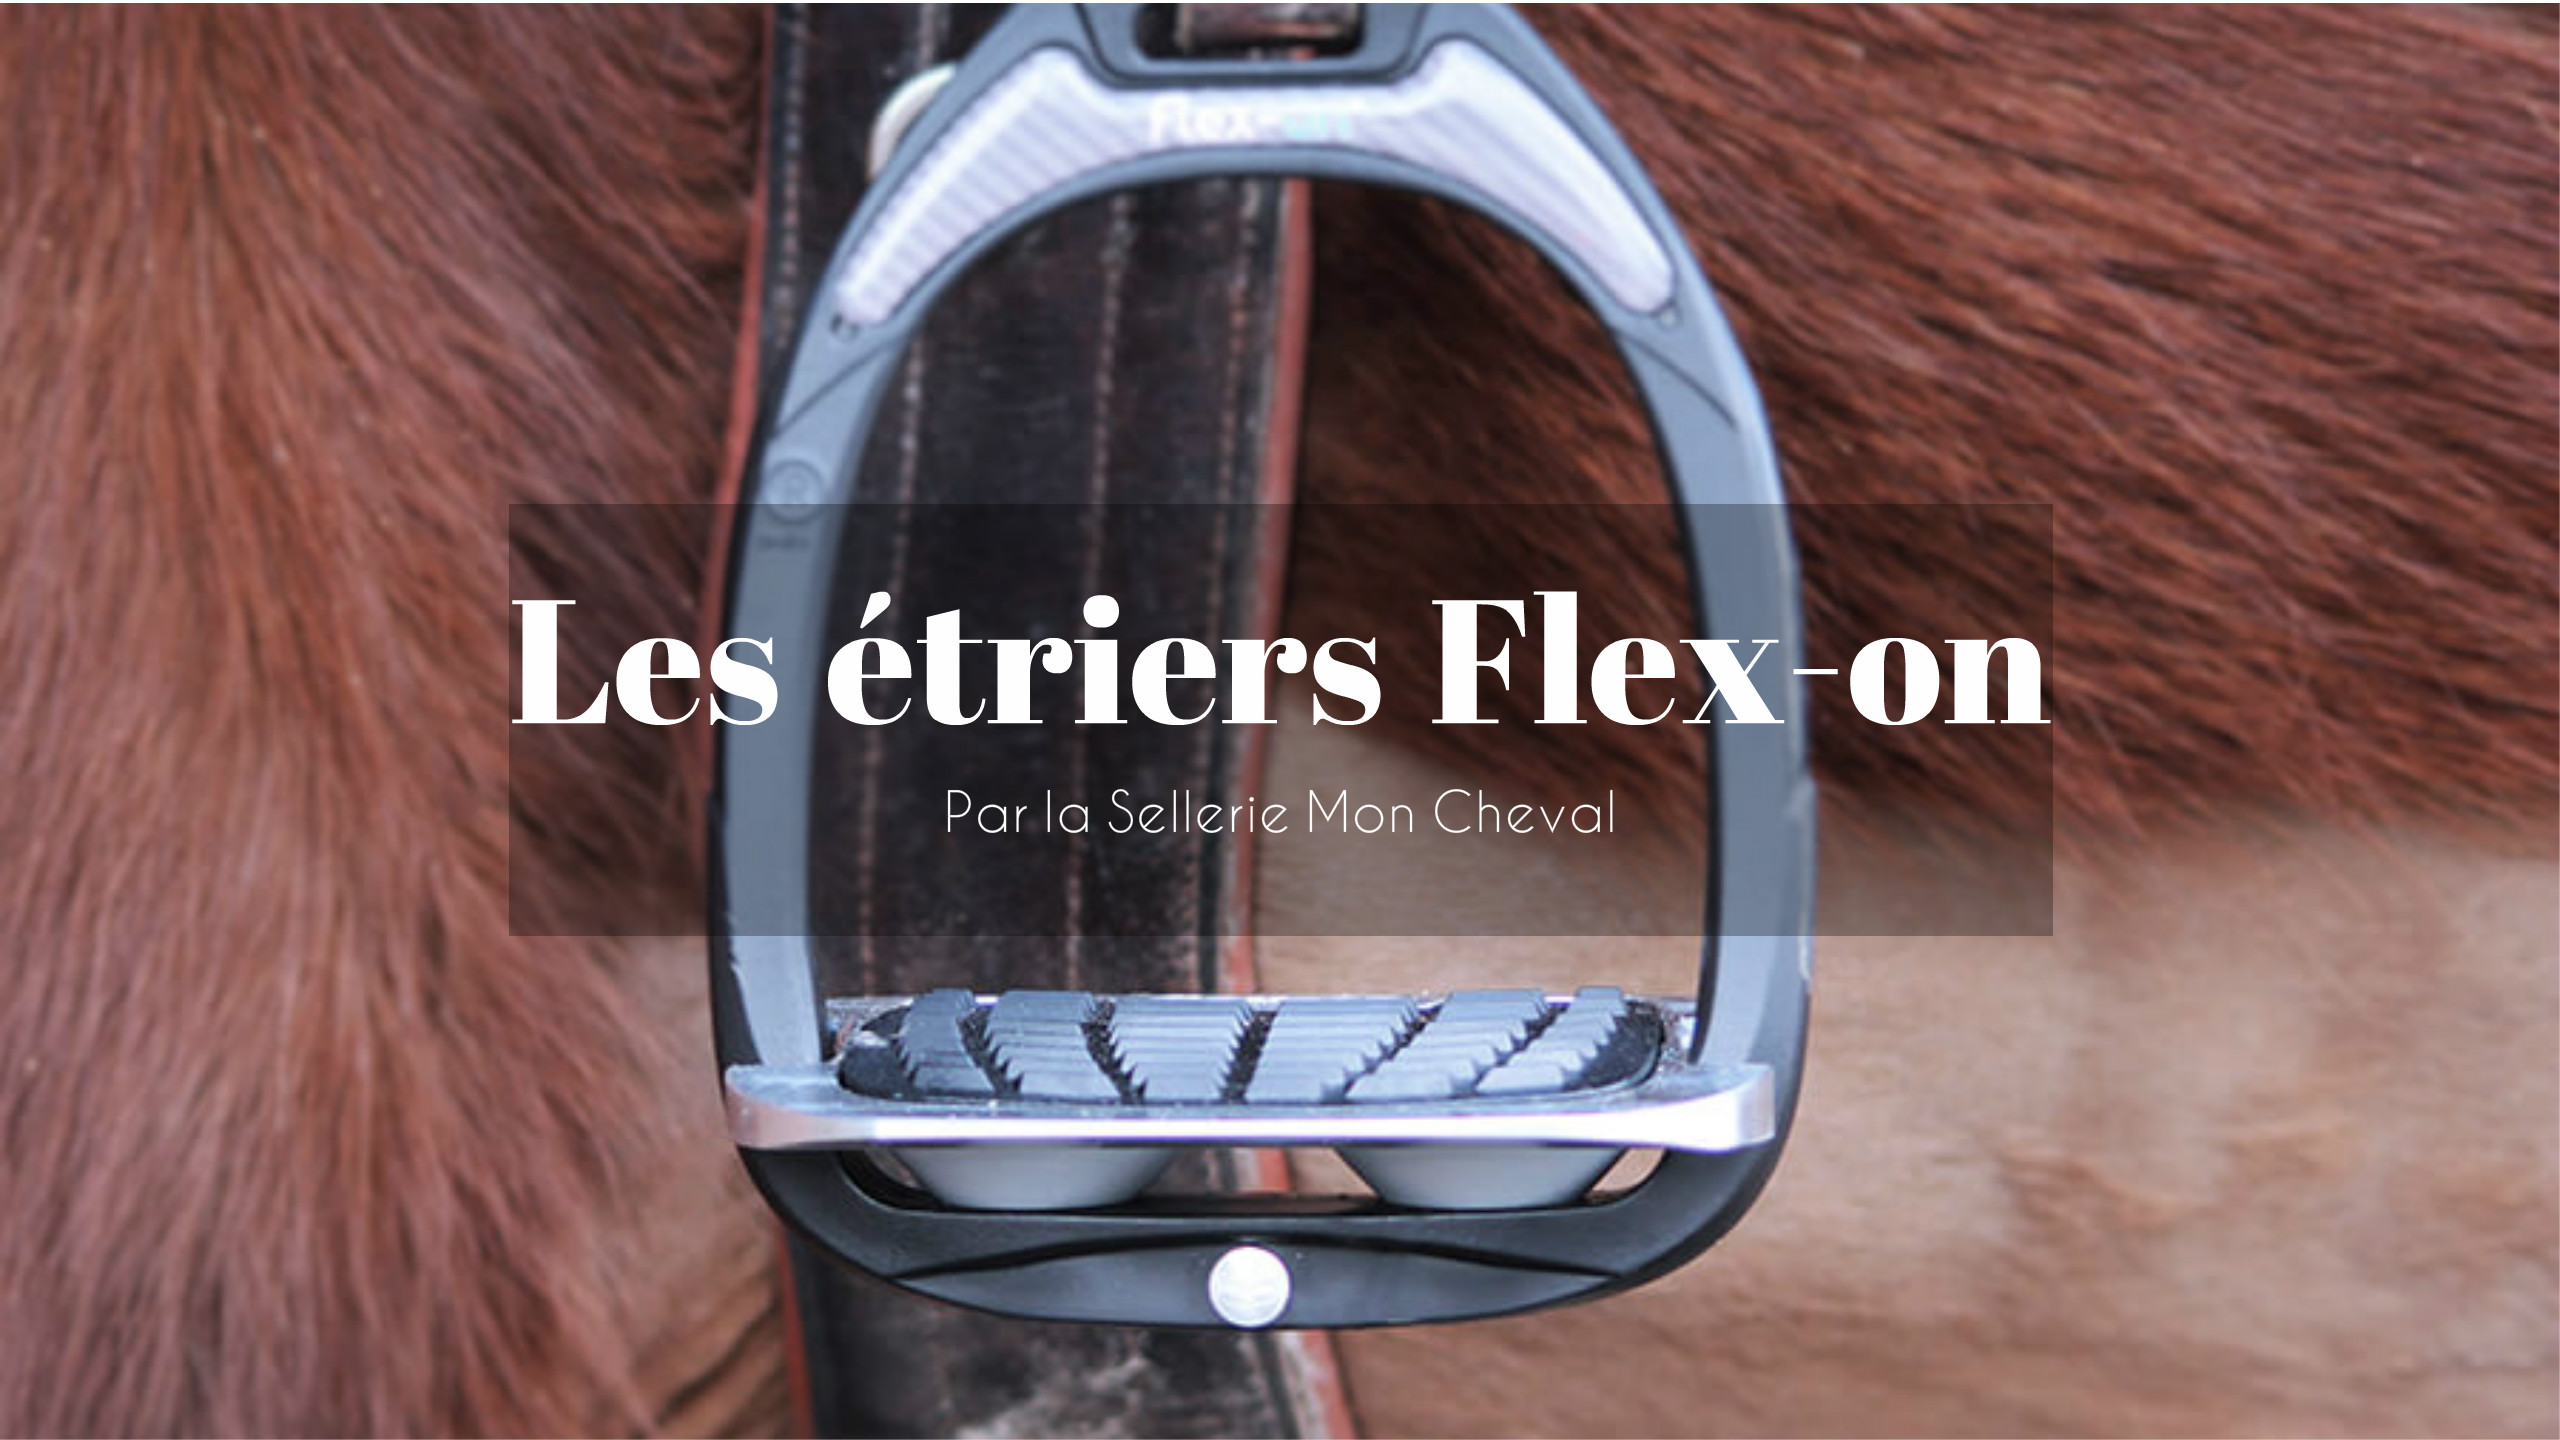 Etriers Green Composite Flex-On personnalisables - FLEX-ON - Accueil 